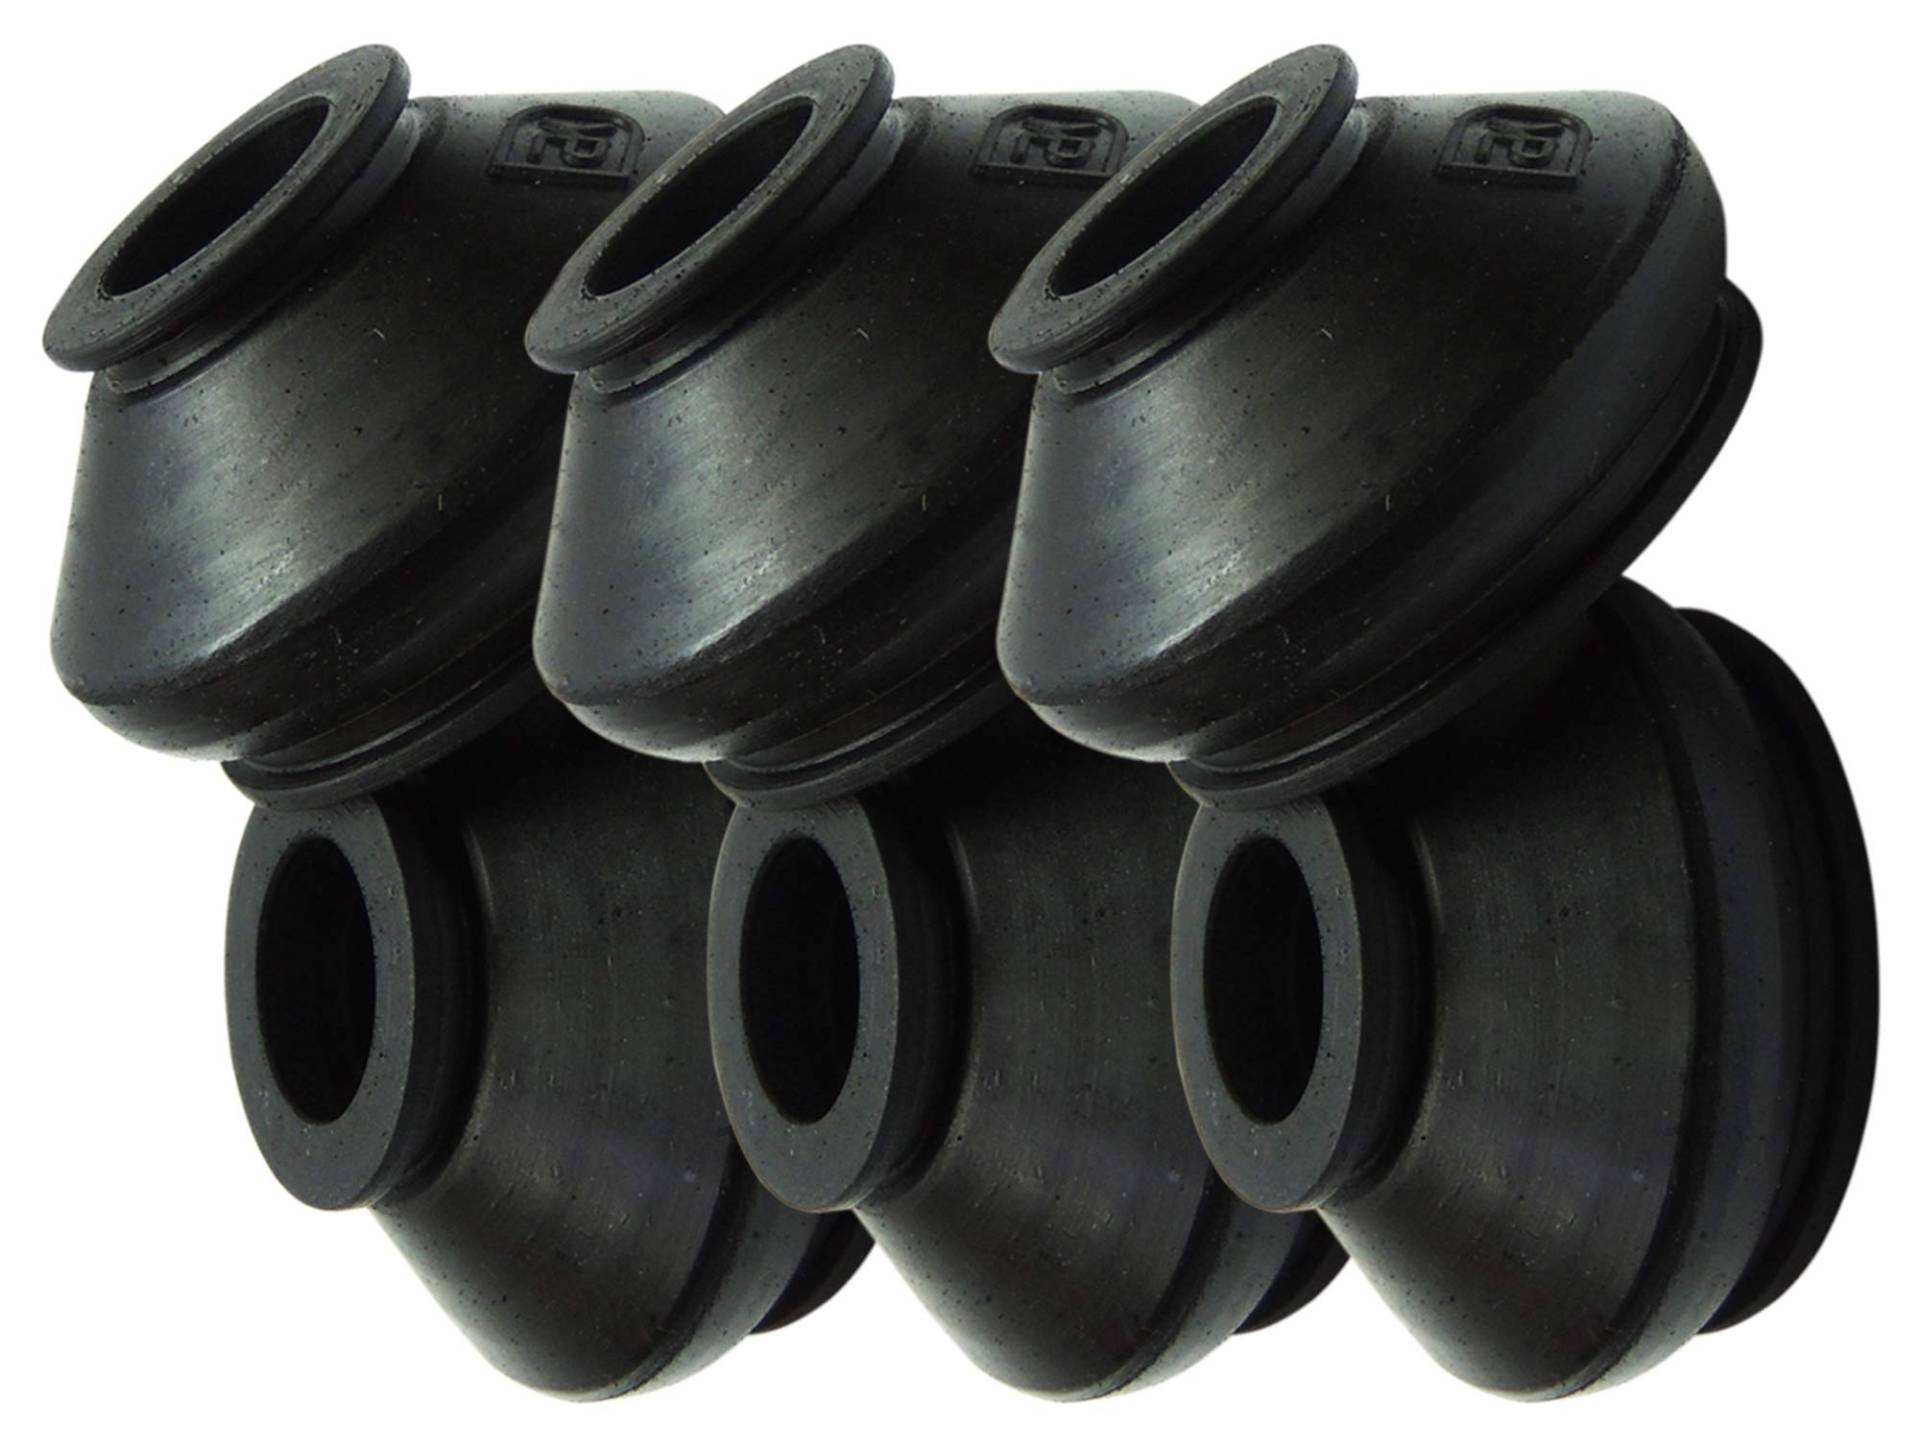 6 x hochwertige Gummi-Staubschutzkappen für Spurstangenkopf und Kugelgelenk, Größe 13 30 23 von DBK-Dimitrov